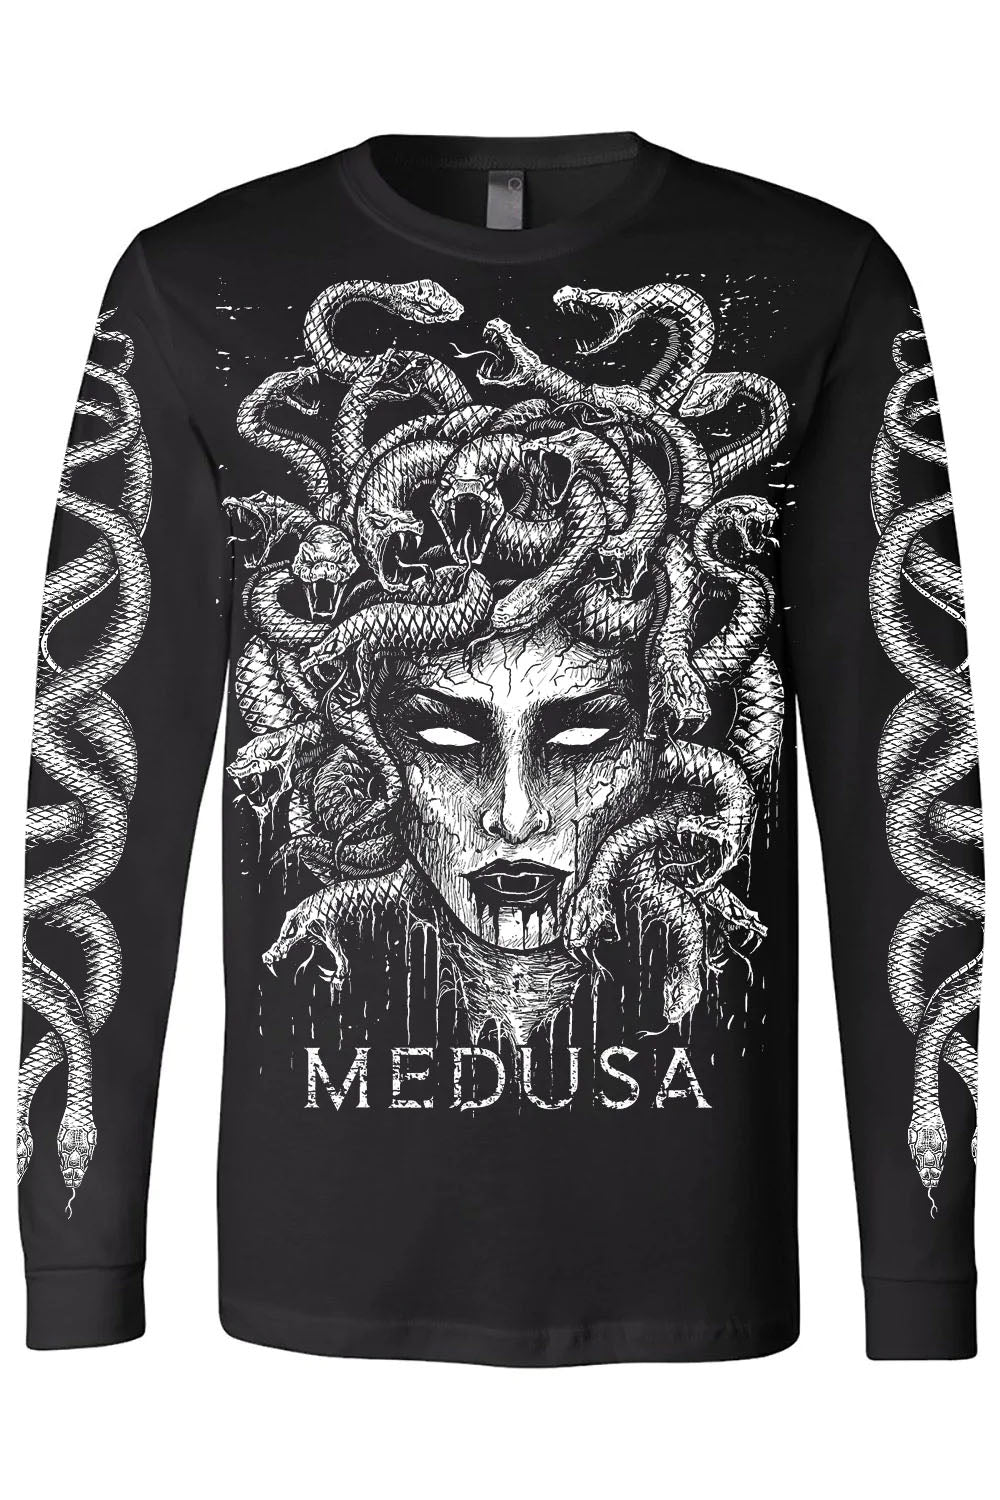 Medusa Tee [Multiple Styles Available]